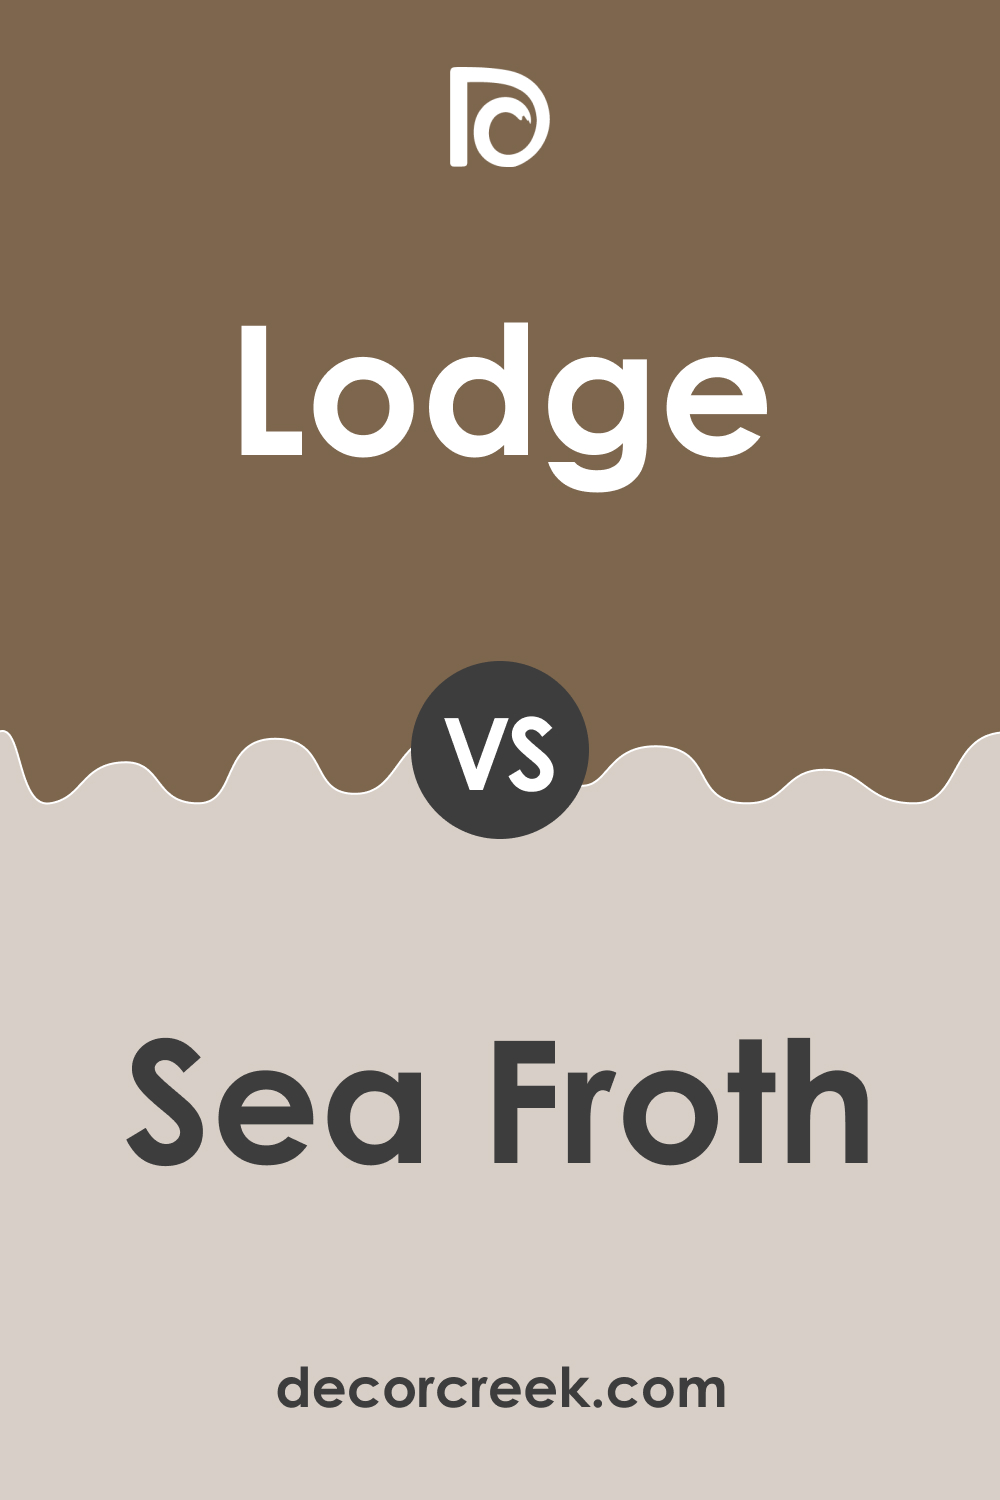 Lodge AF-115 vs. BM 2107-60 Sea Froth